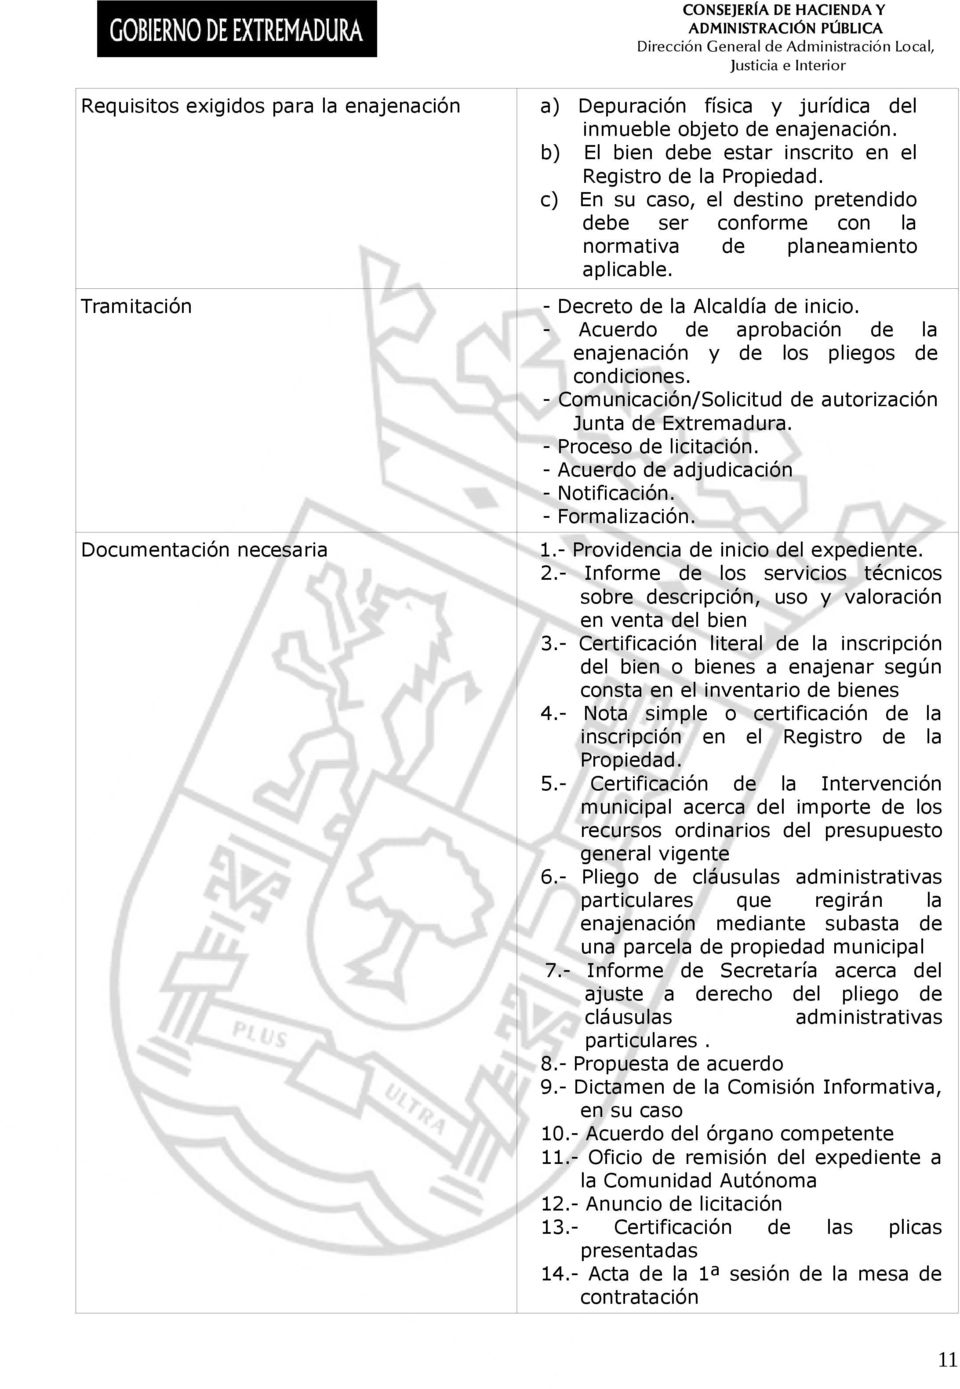 - Acuerdo de aprobación de la enajenación y de los pliegos de condiciones. - Comunicación/Solicitud de autorización Junta de Extremadura. - Proceso de licitación.